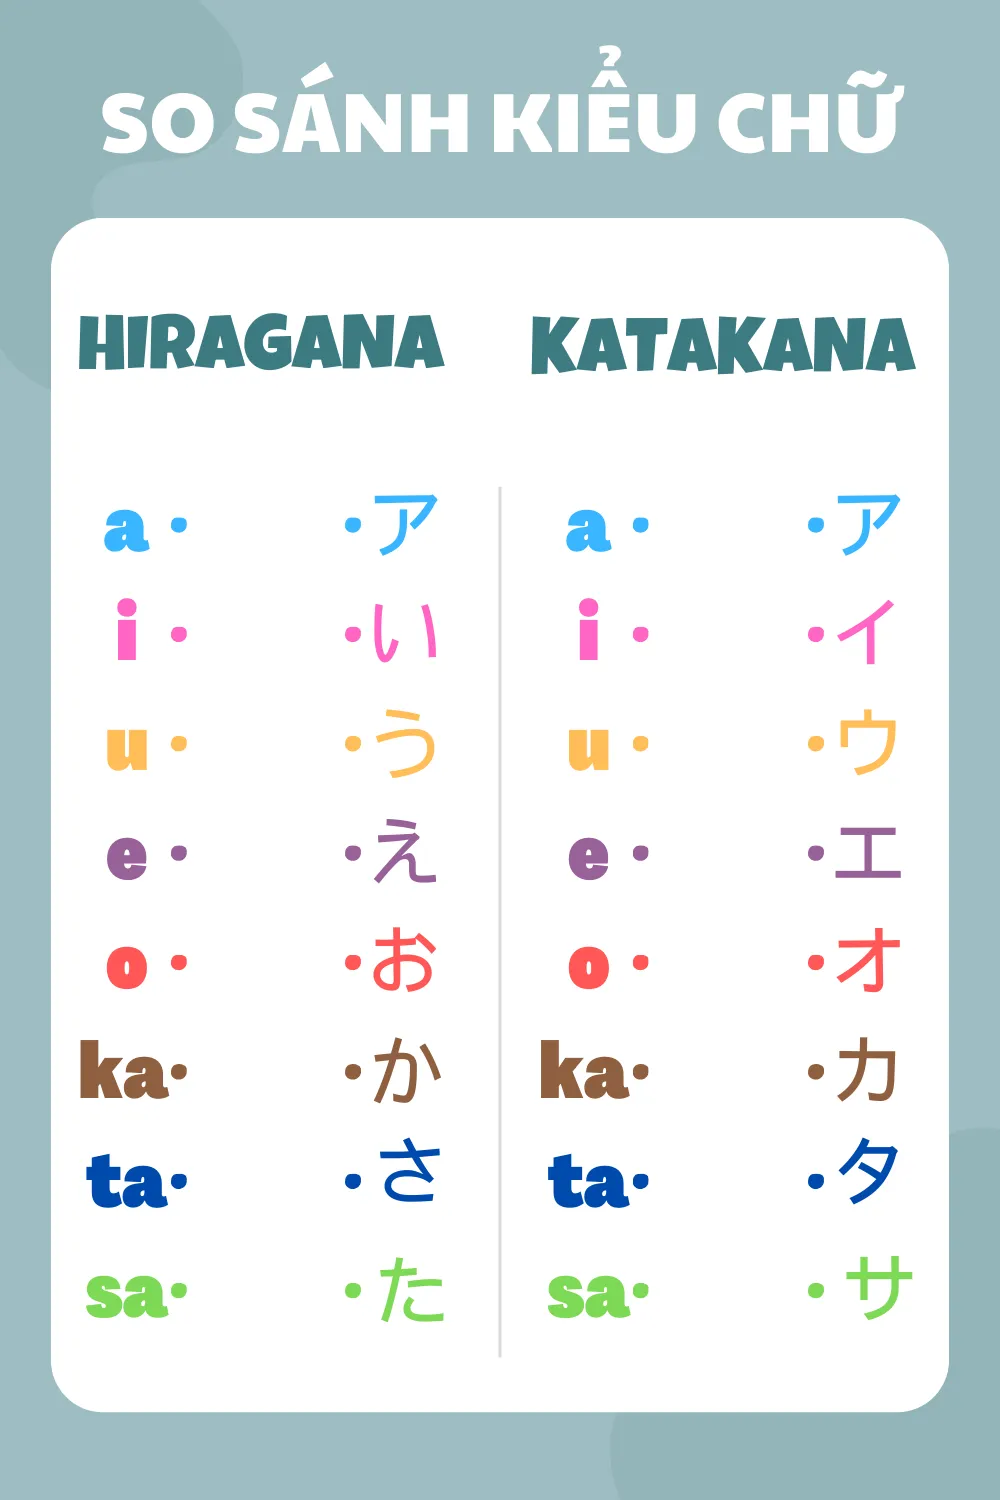 So sánh kiểu chữ 2 bảng chữ cái Hiragana và Katakana